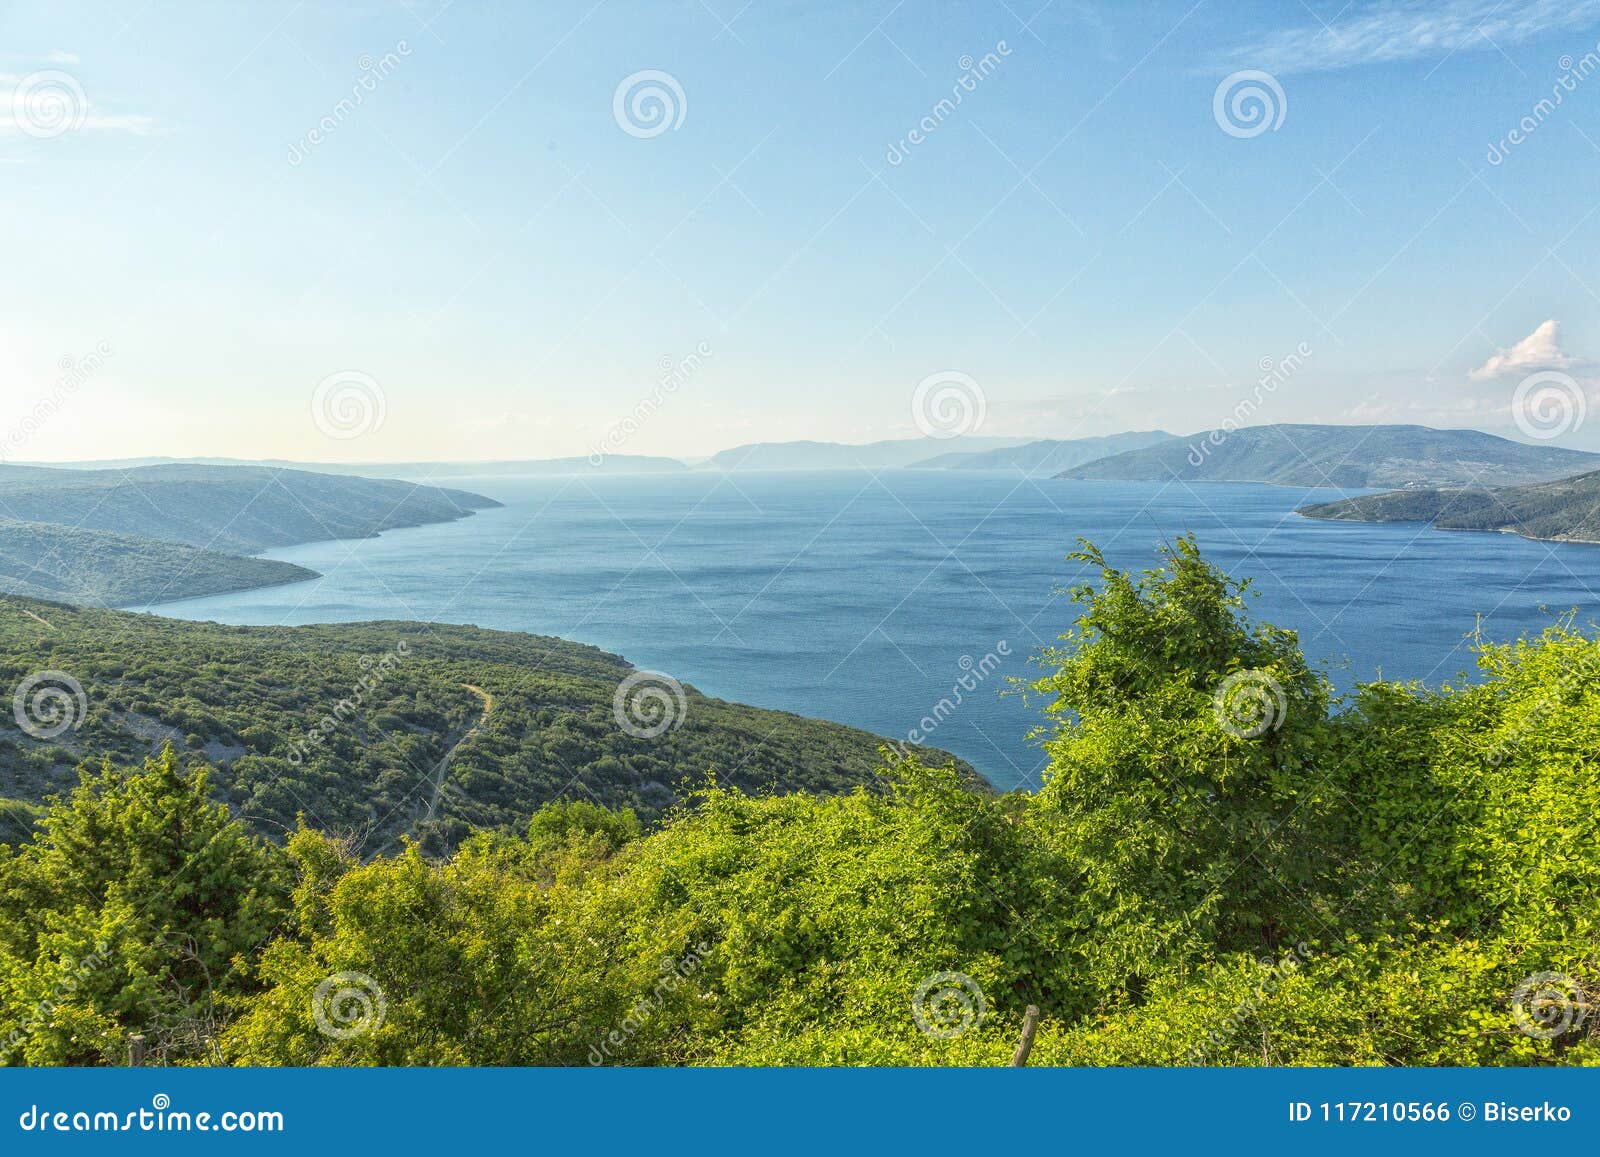 Ilha Cres no mar de adriático, Croácia. Cres é uma ilha adriático na Croácia É uma das ilhas do norte no golfo de Kvarner e pode ser alcançado através da balsa de Rijeka, a ilha Krk ou da península de Istrian Com uma área de 405 78 km2, Cres são o mesmo tamanho como a ilha vizinha de Krk, embora Krk por muitos anos seja pensado o maior das ilhas Cres tem uma população de 3.079